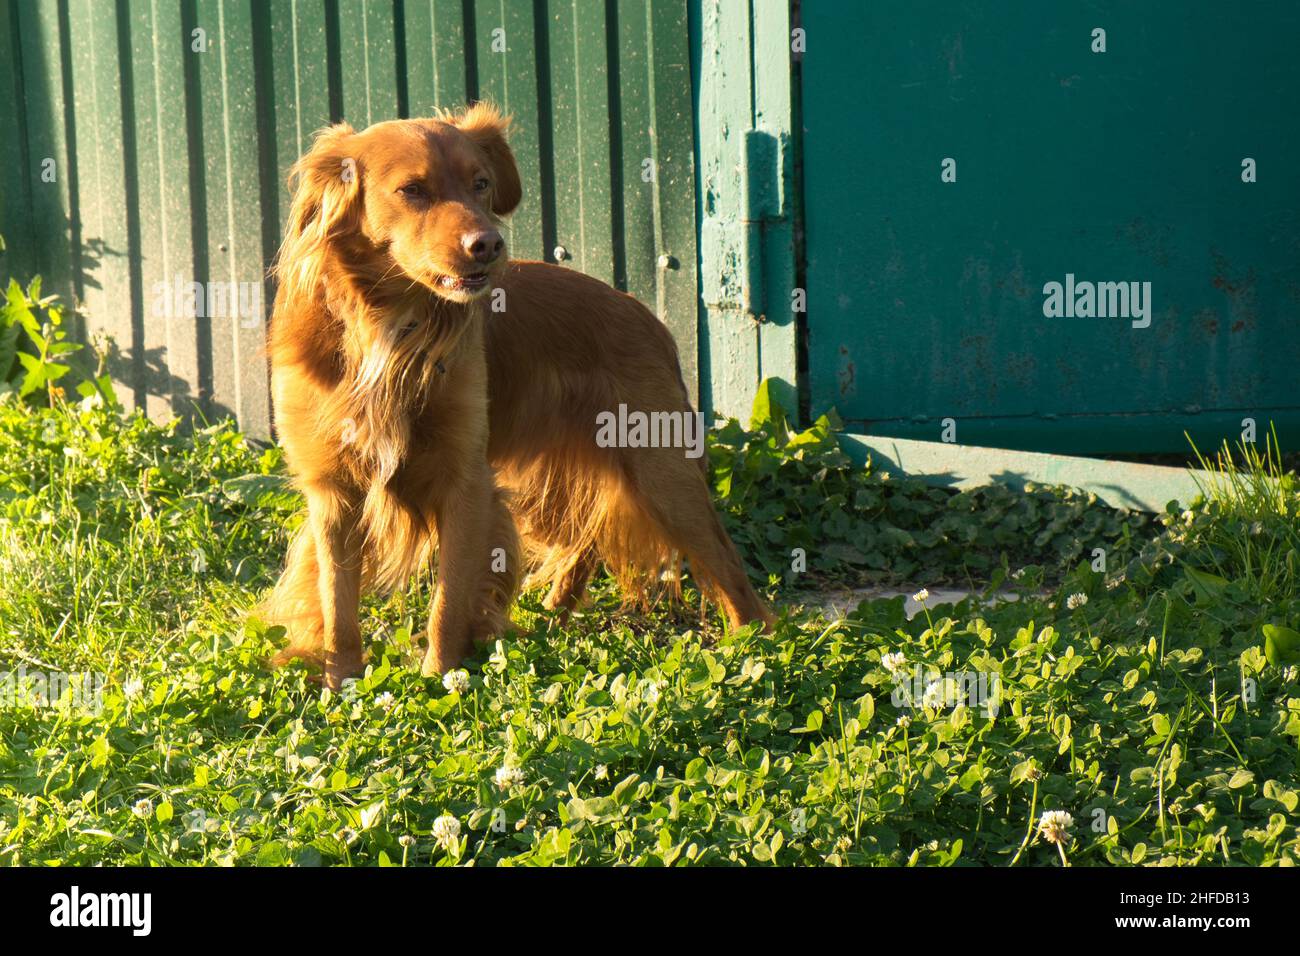 Auf dem Rasen in der Nähe des Zauns steht ein roter Hund, der den Eingang bewacht Stockfoto